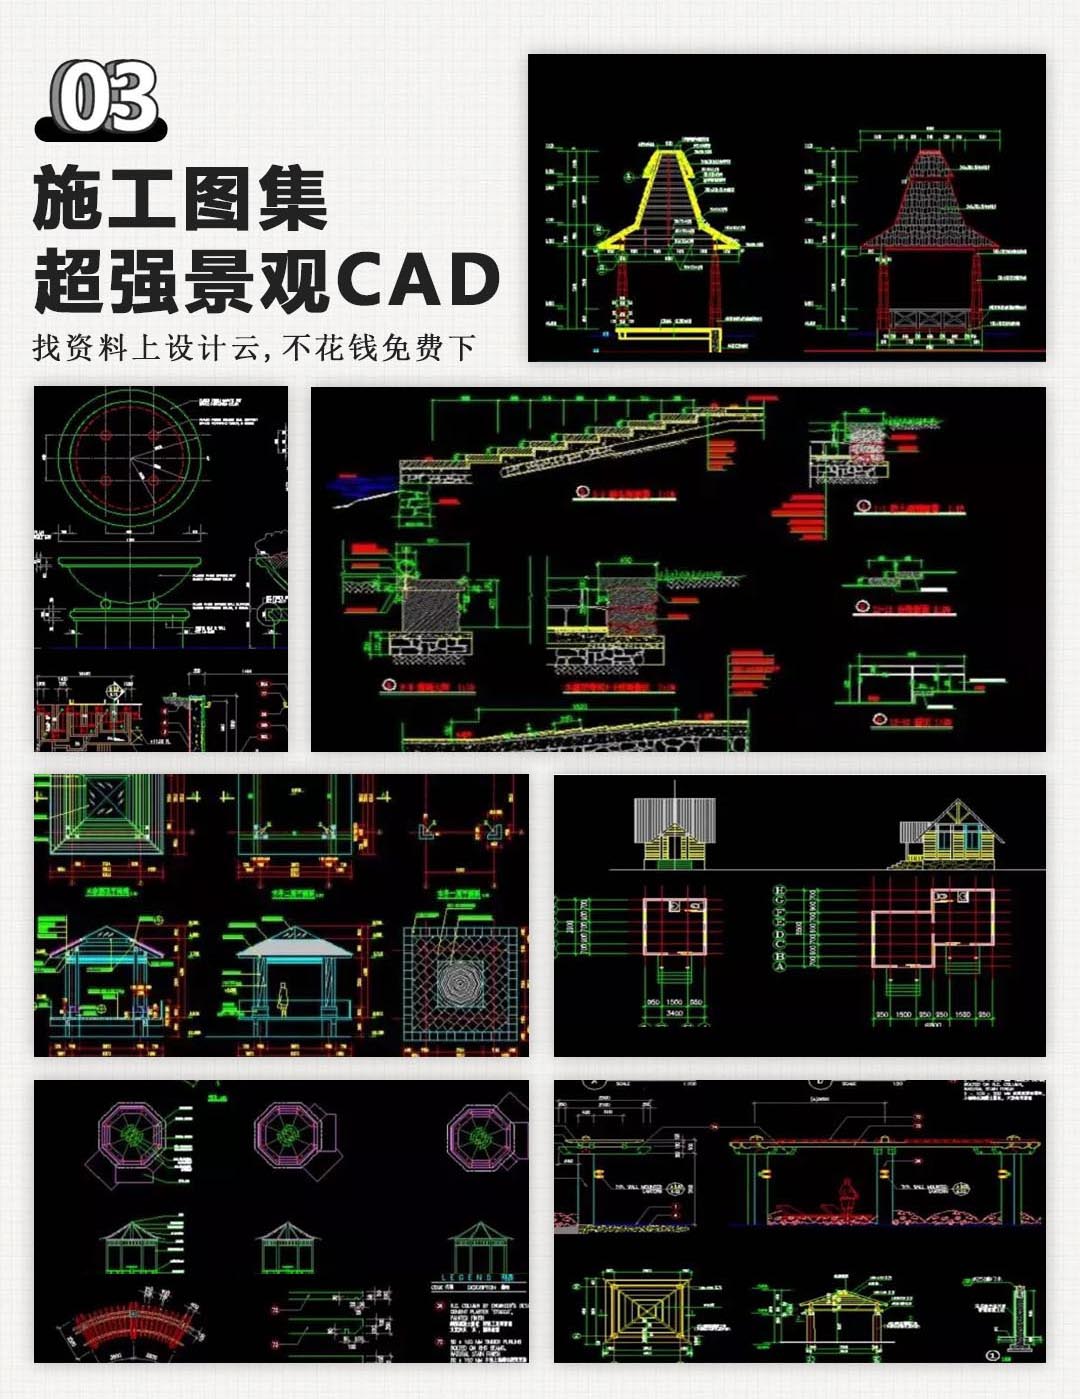 施工图集超强景观CAD-1